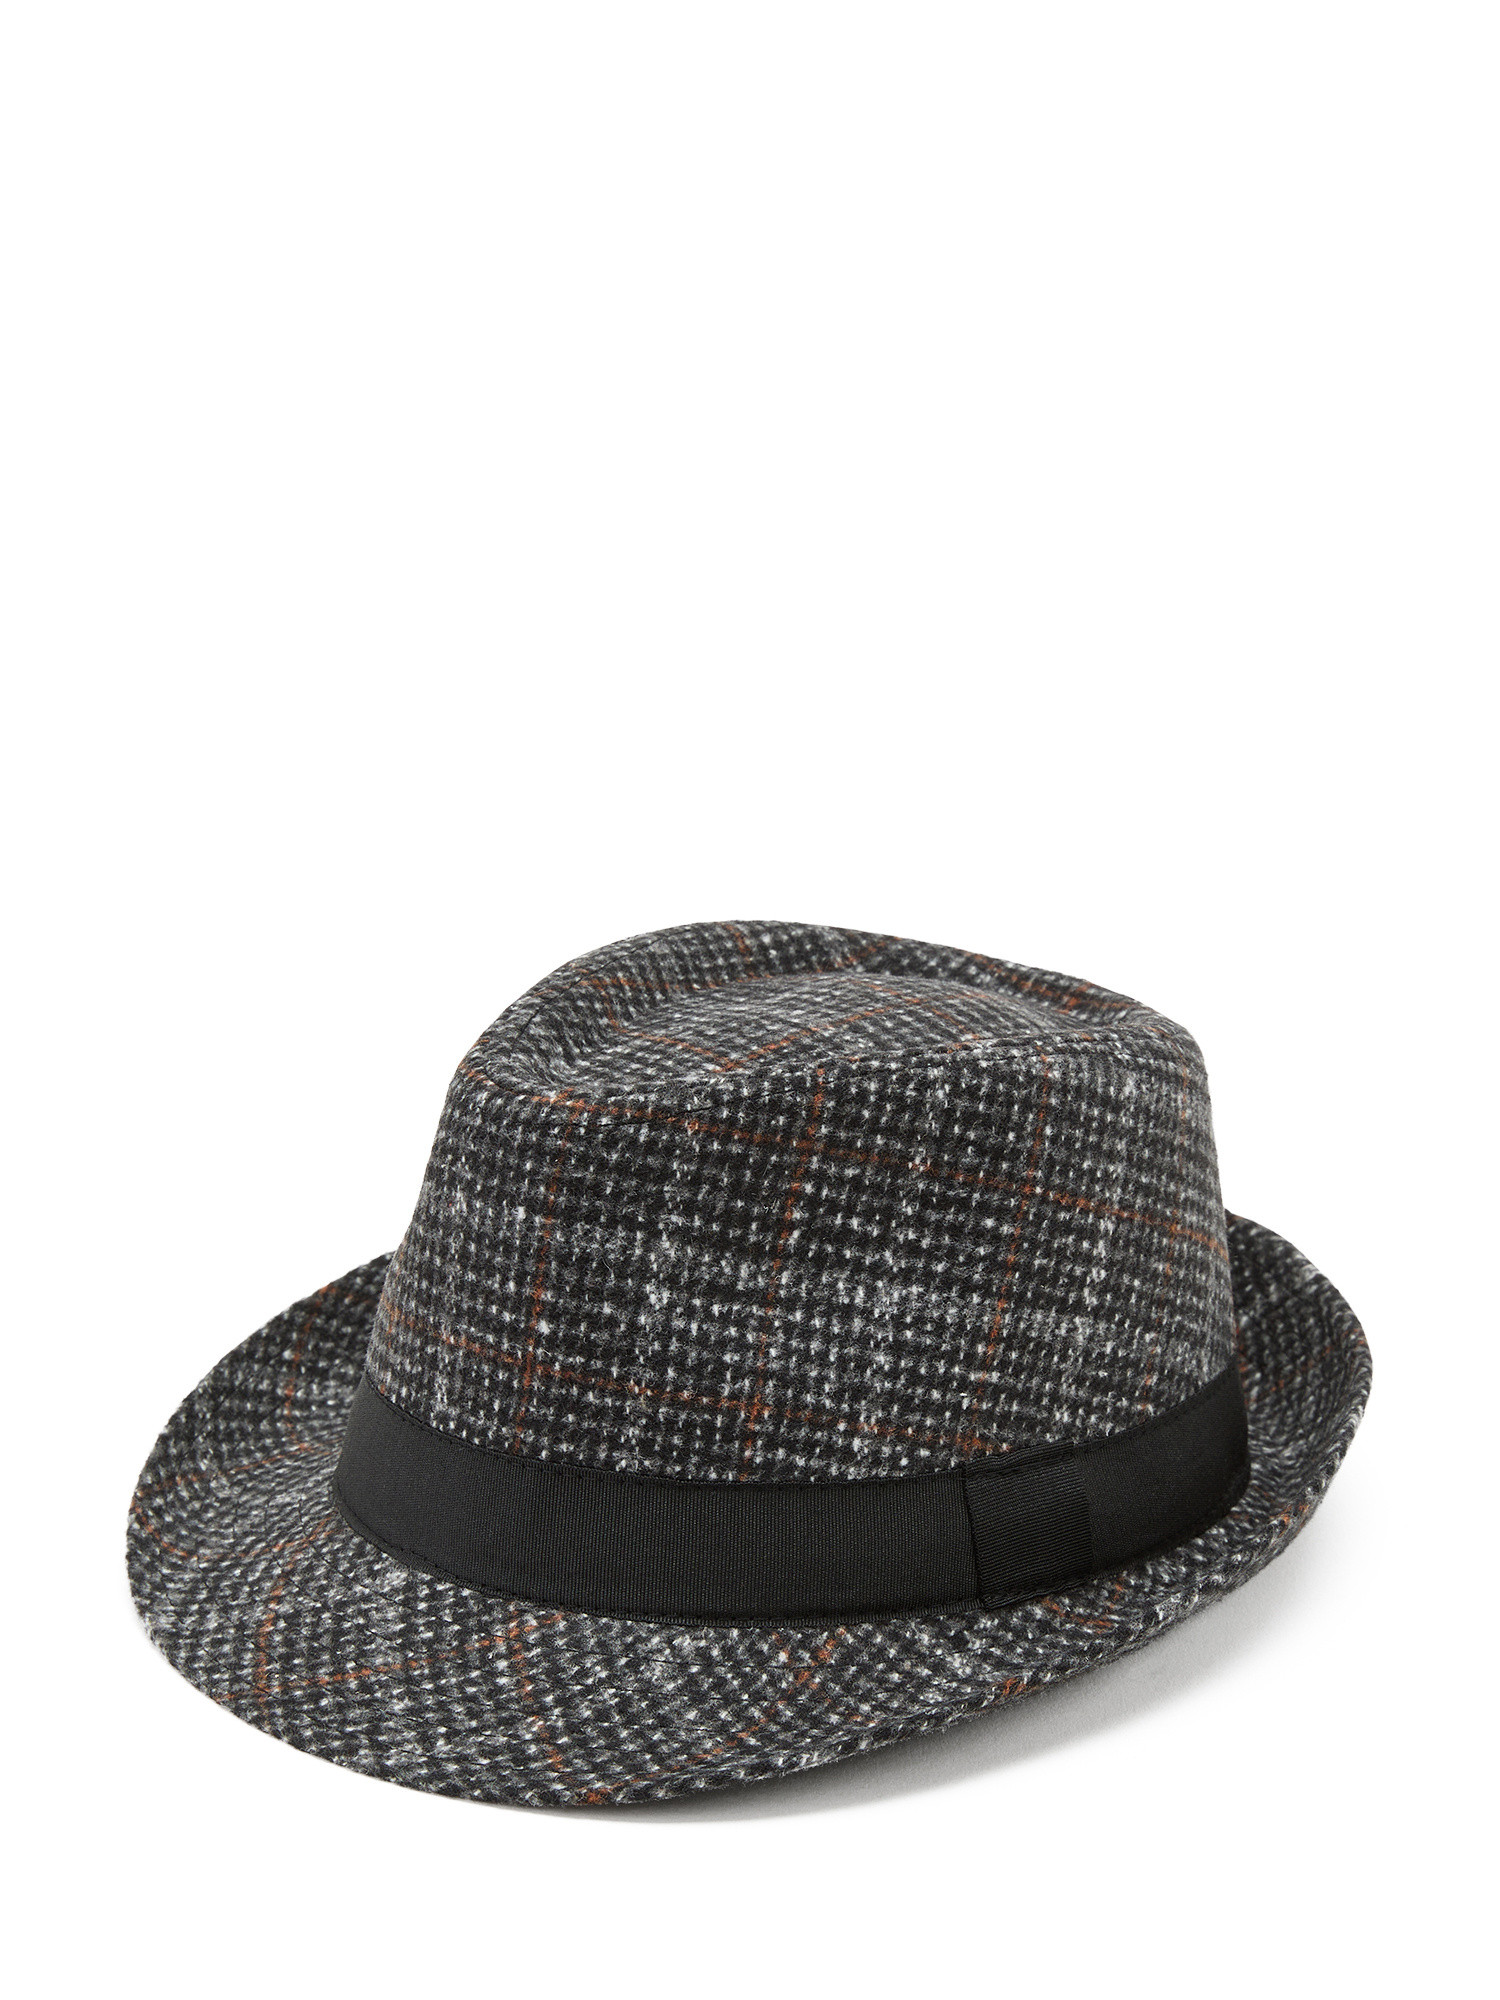 Luca D'Altieri - Tartan alpine hat, Black, large image number 0